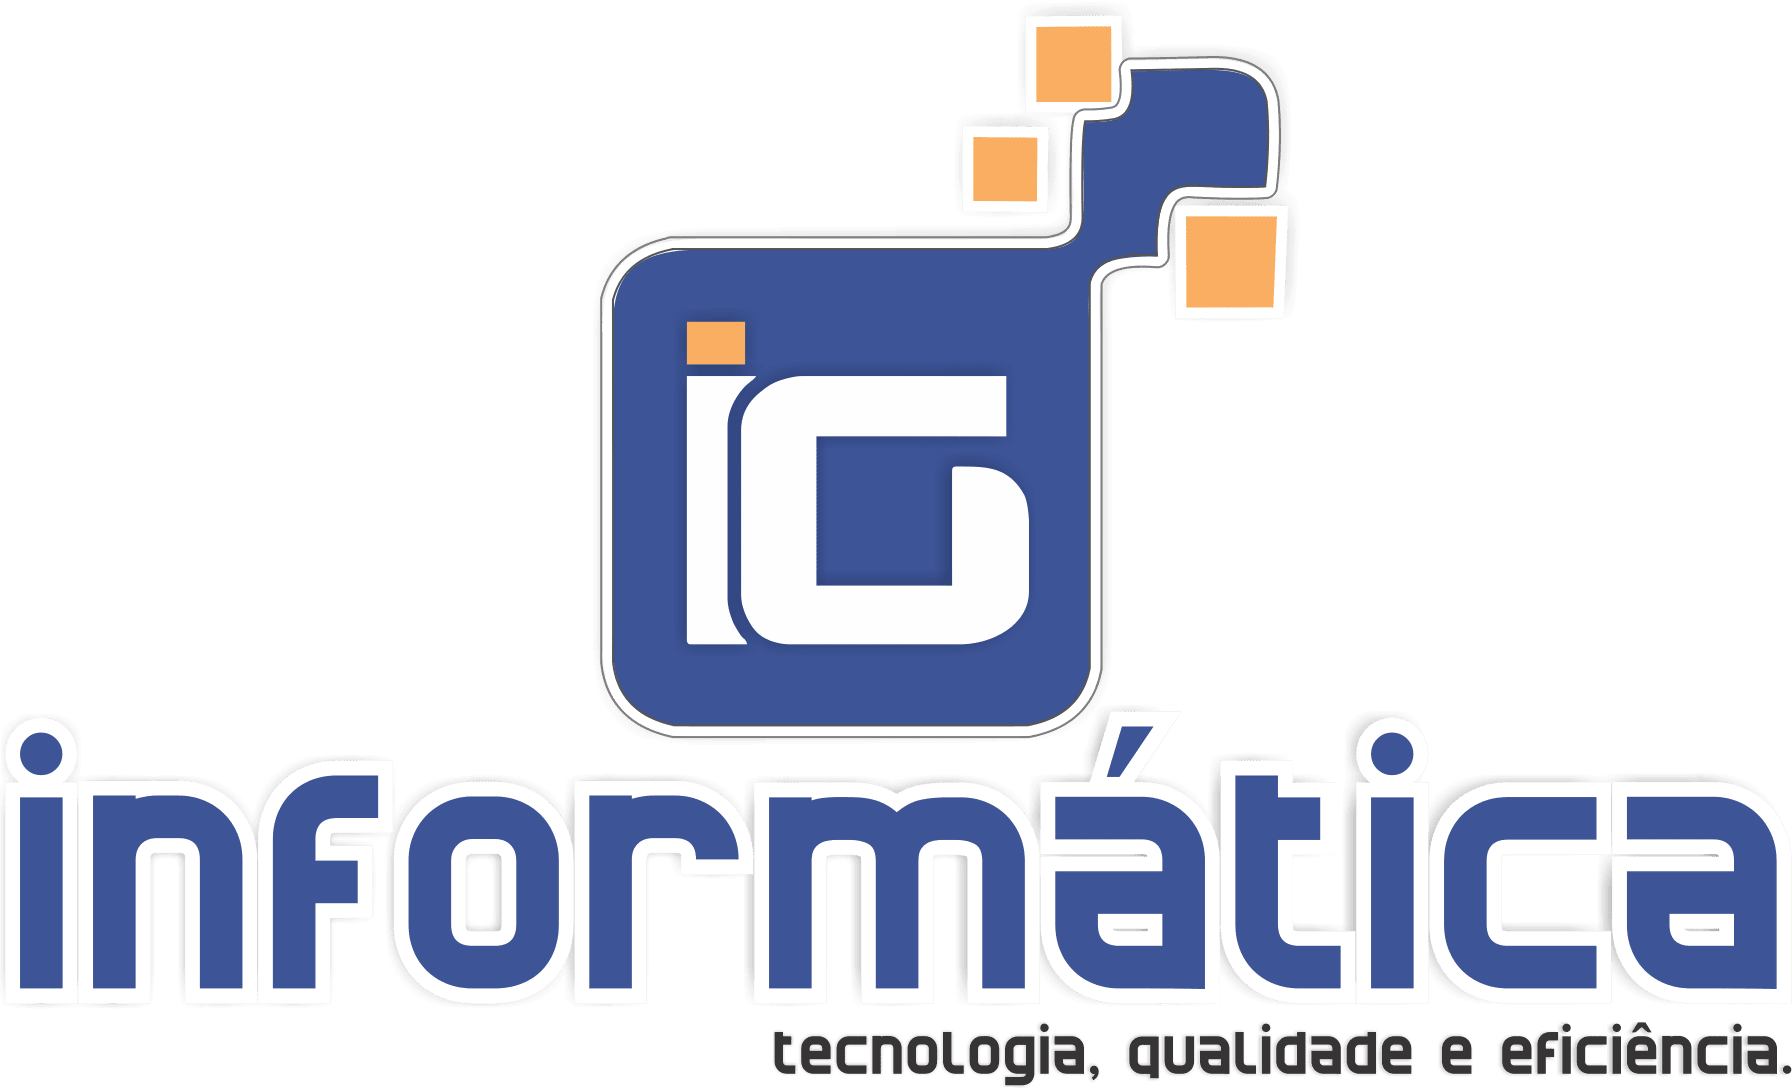 IG Automação e Informática